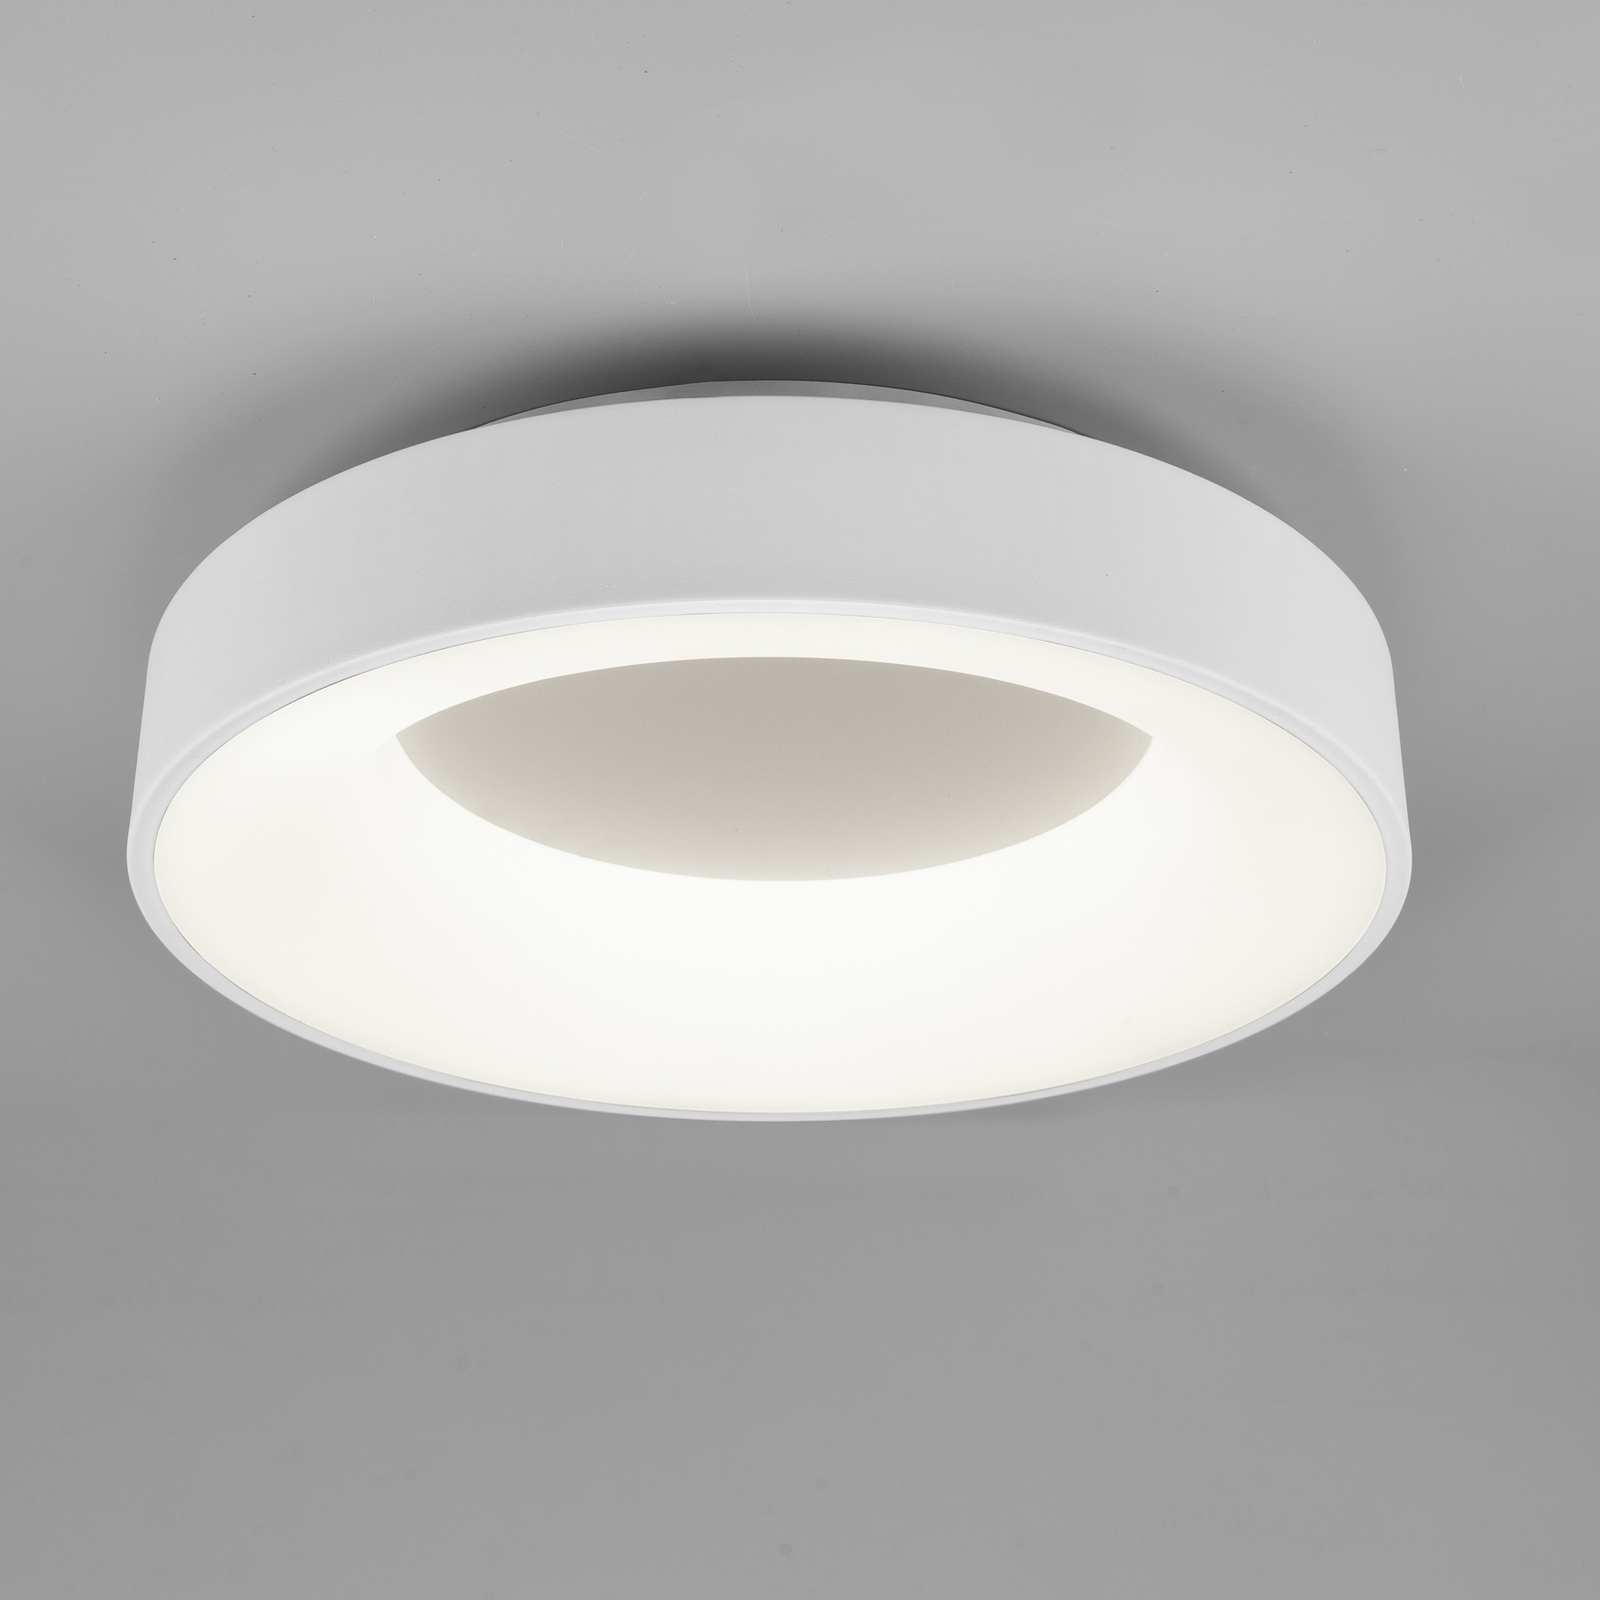 Lampa sufitowa LED Girona, ściemniacz, biała